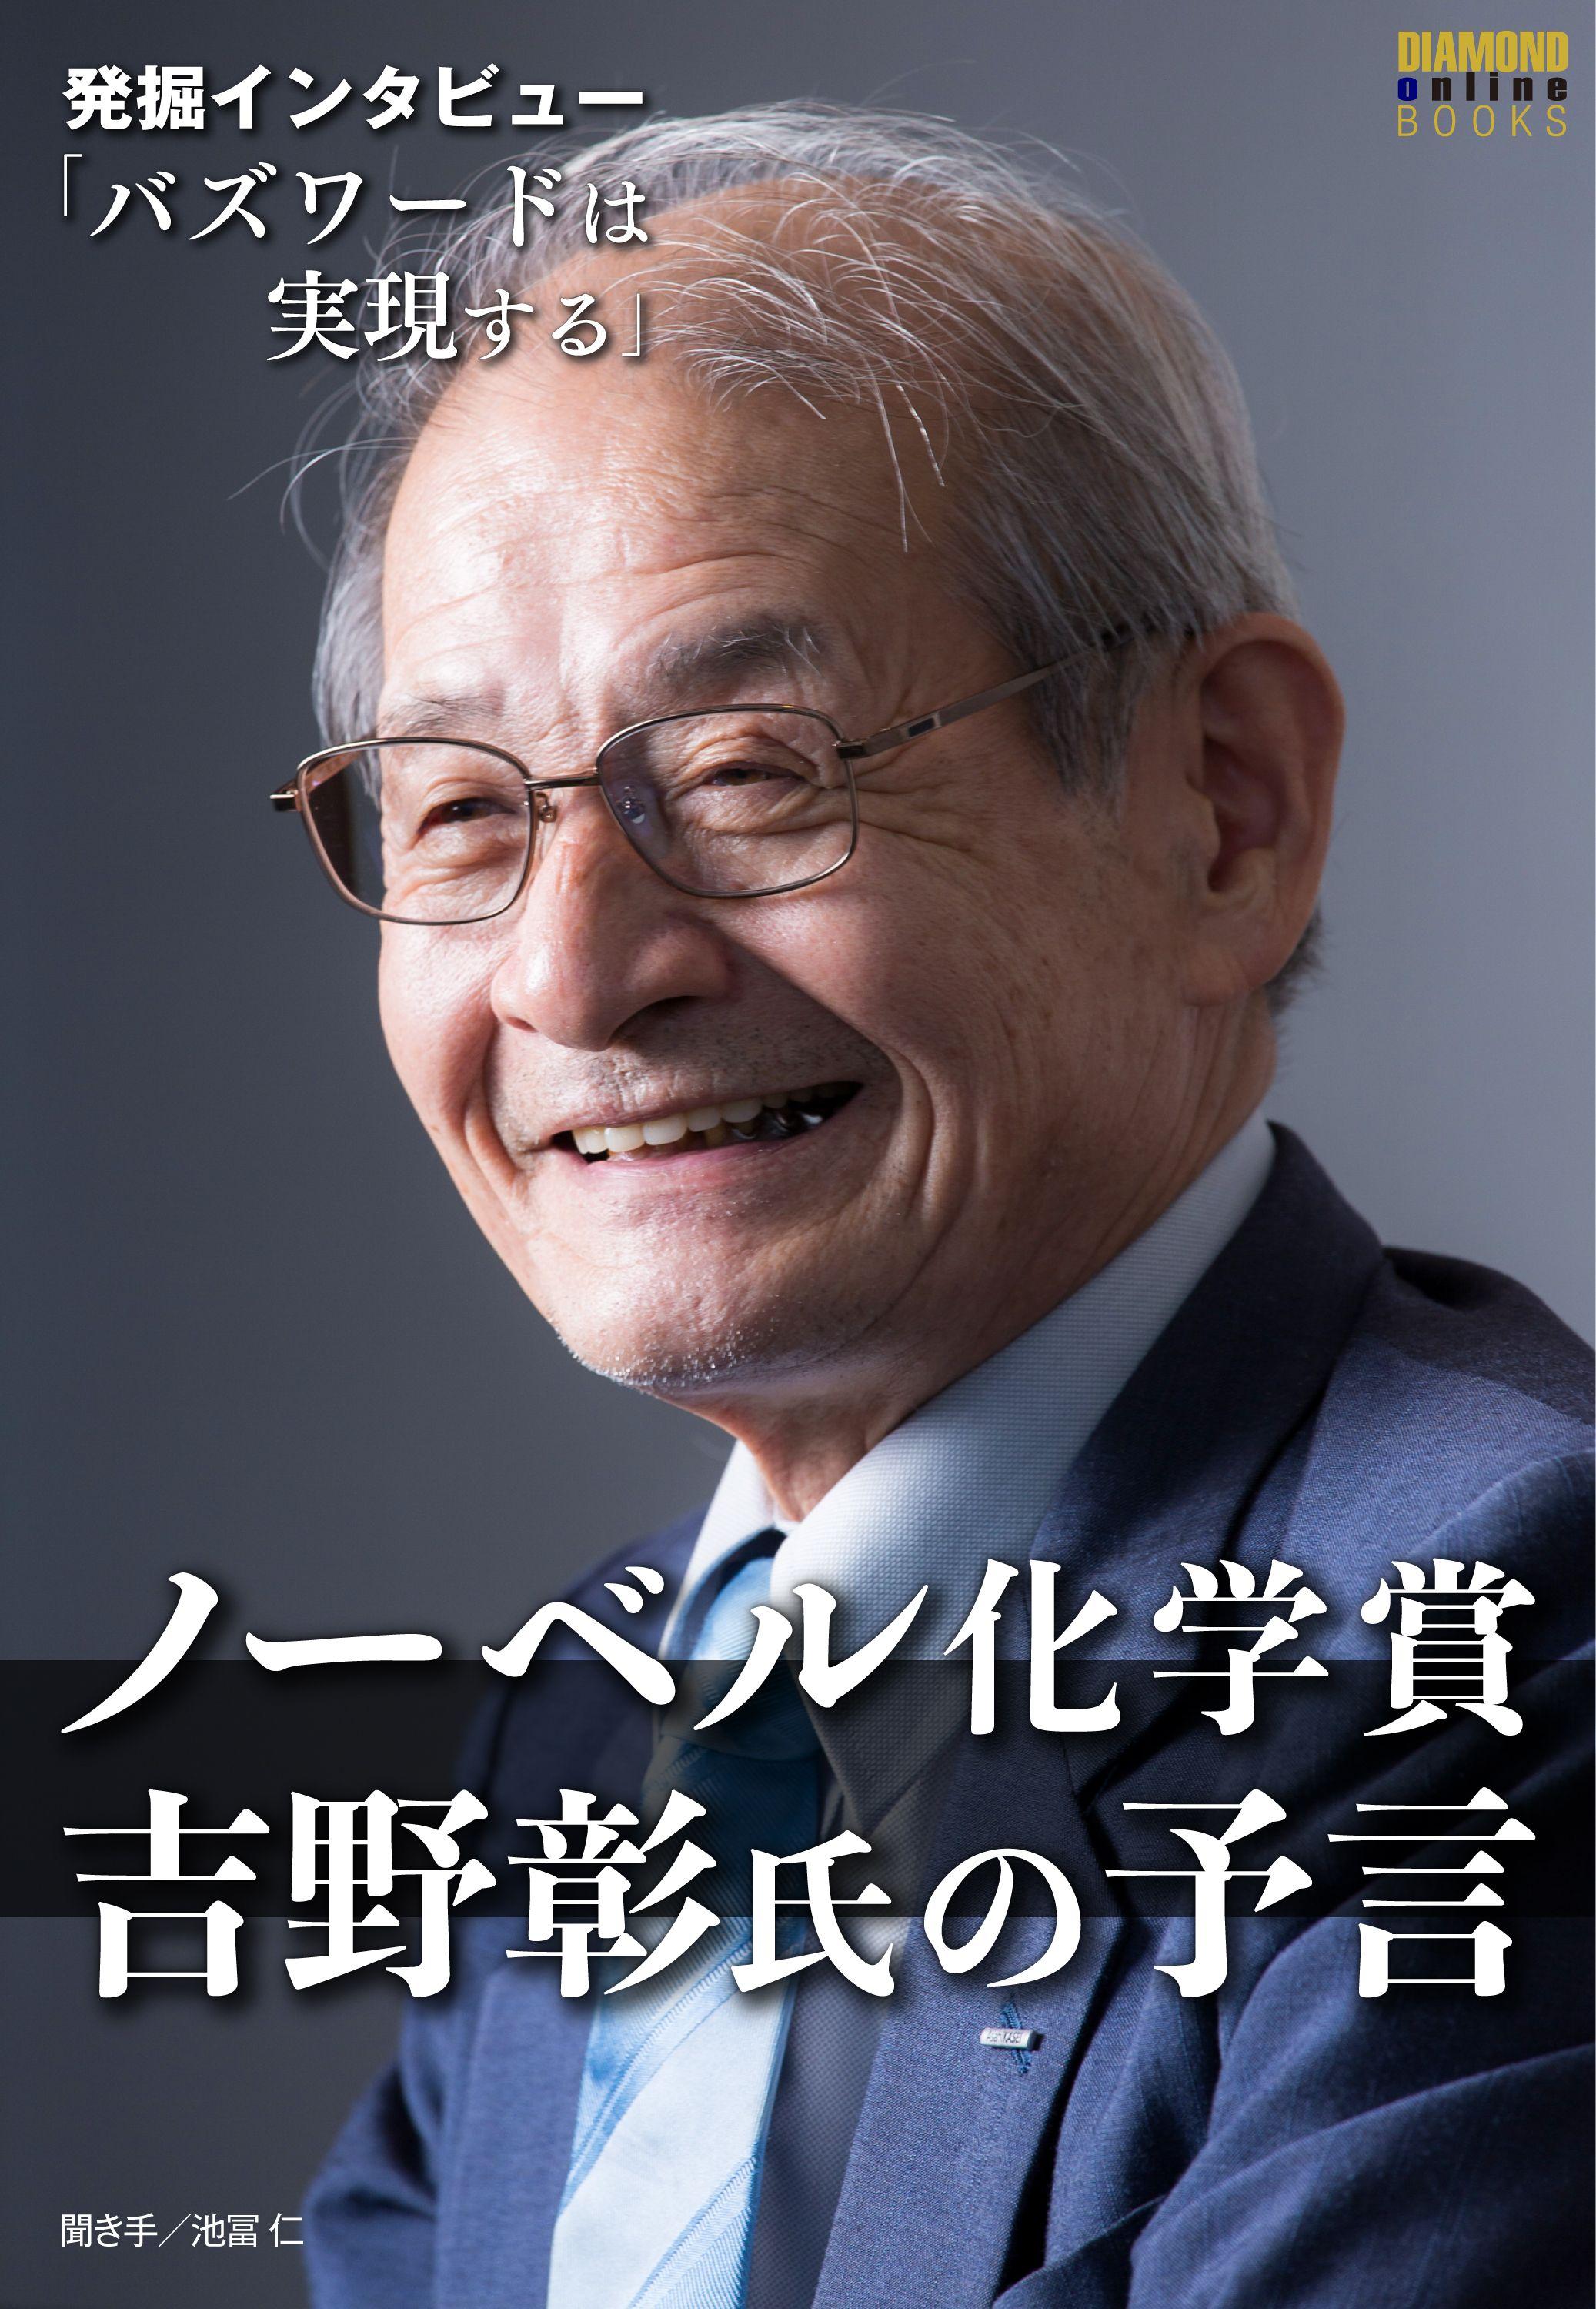 ノーベル化学賞・吉野彰氏の予言「バズワードは実現する」